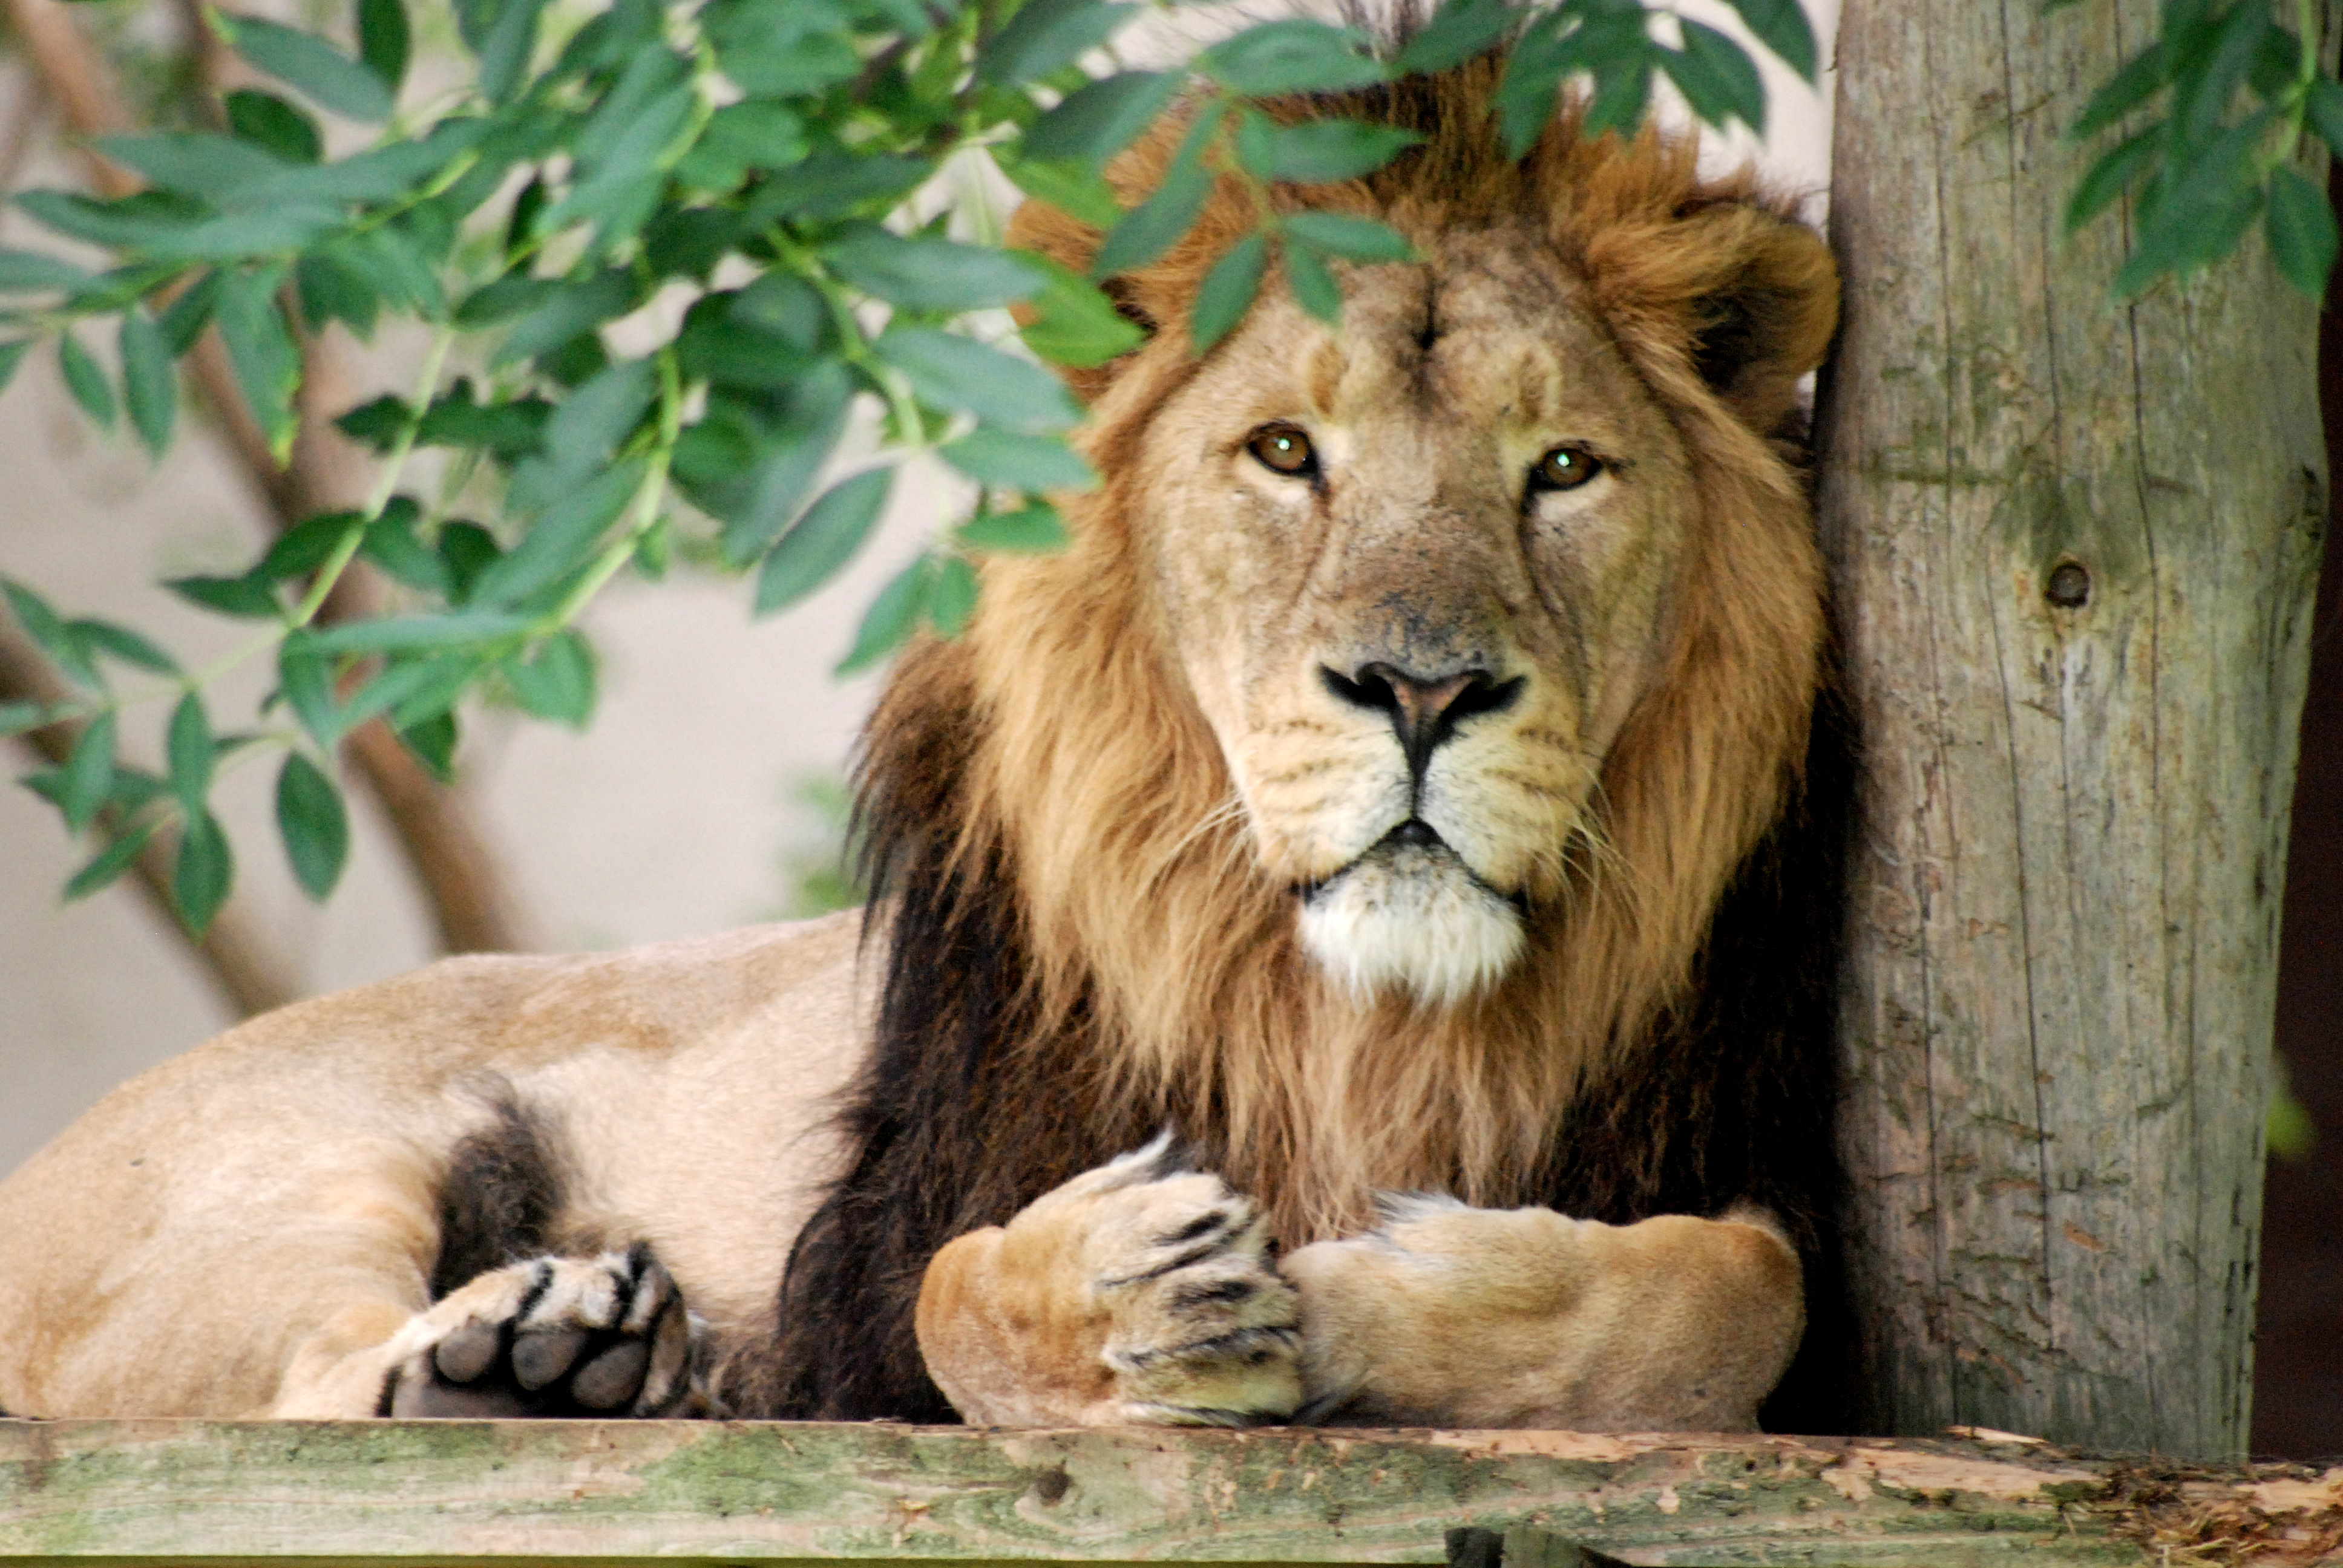 Emberevés miatt életfogytiglani állatkertre ítéltek három oroszlánt Indiában